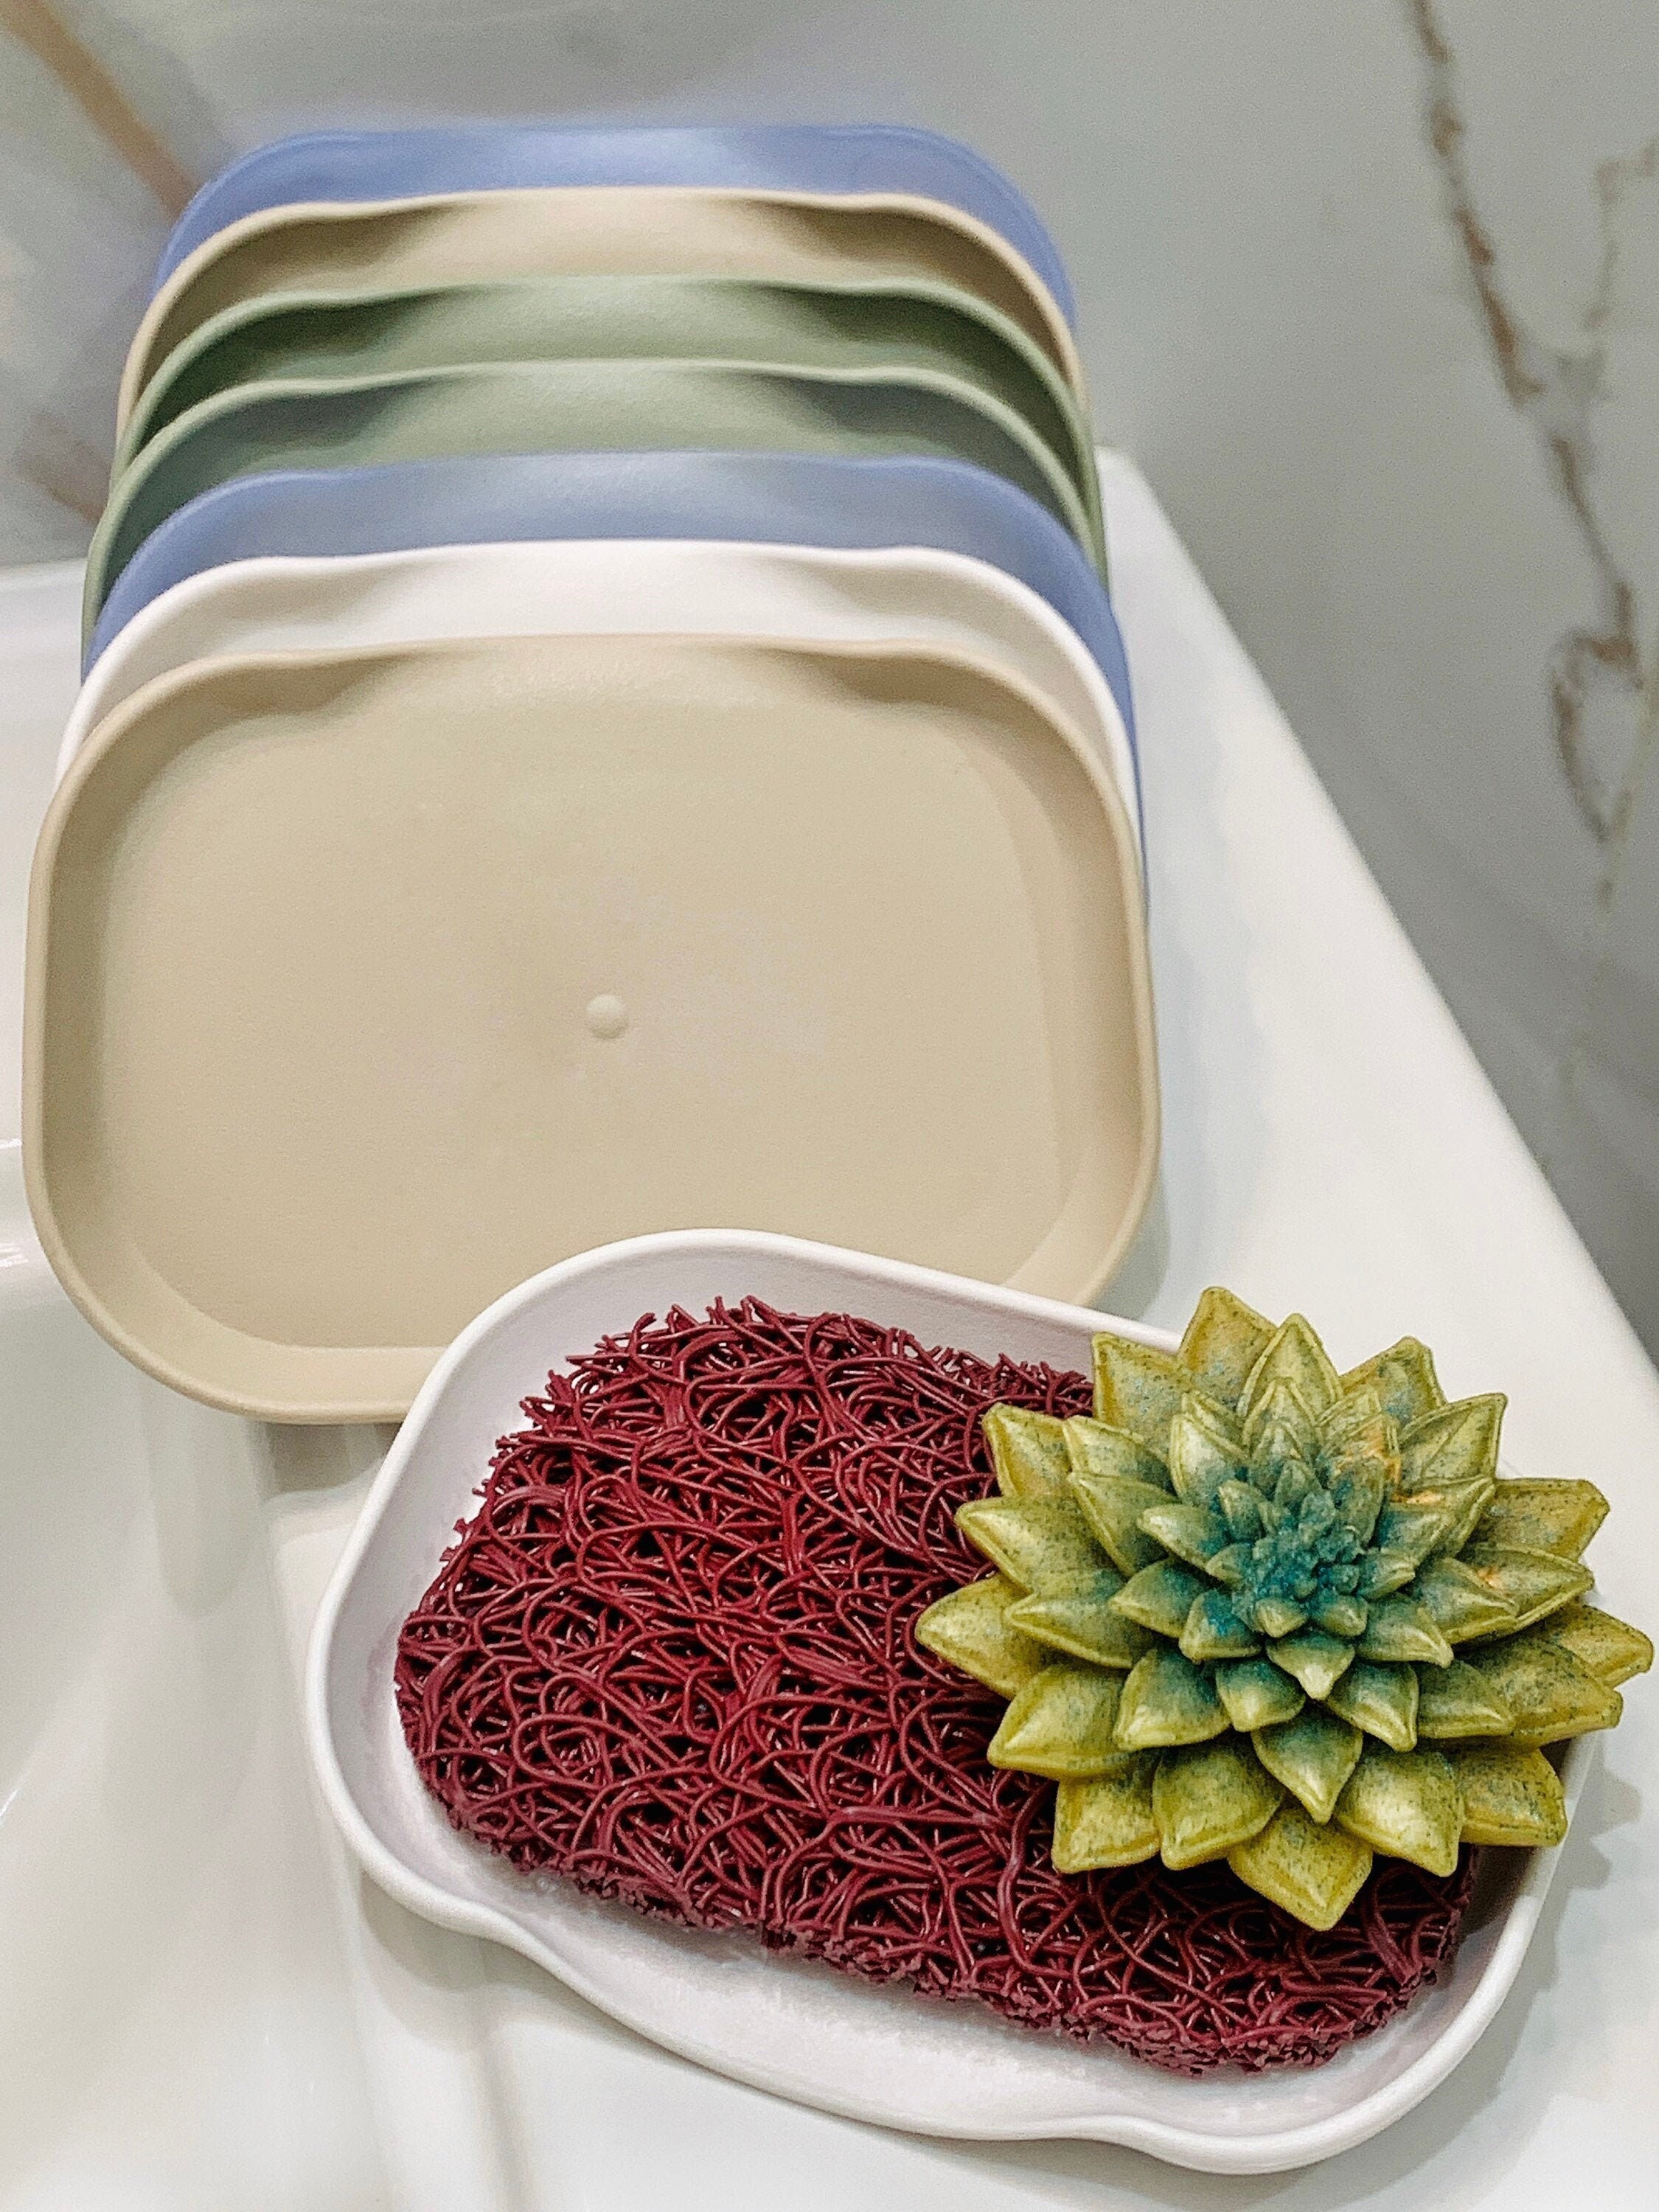 CAXUSD 1 Set Silicone Draining Tray Shower Holder Dish Sponge